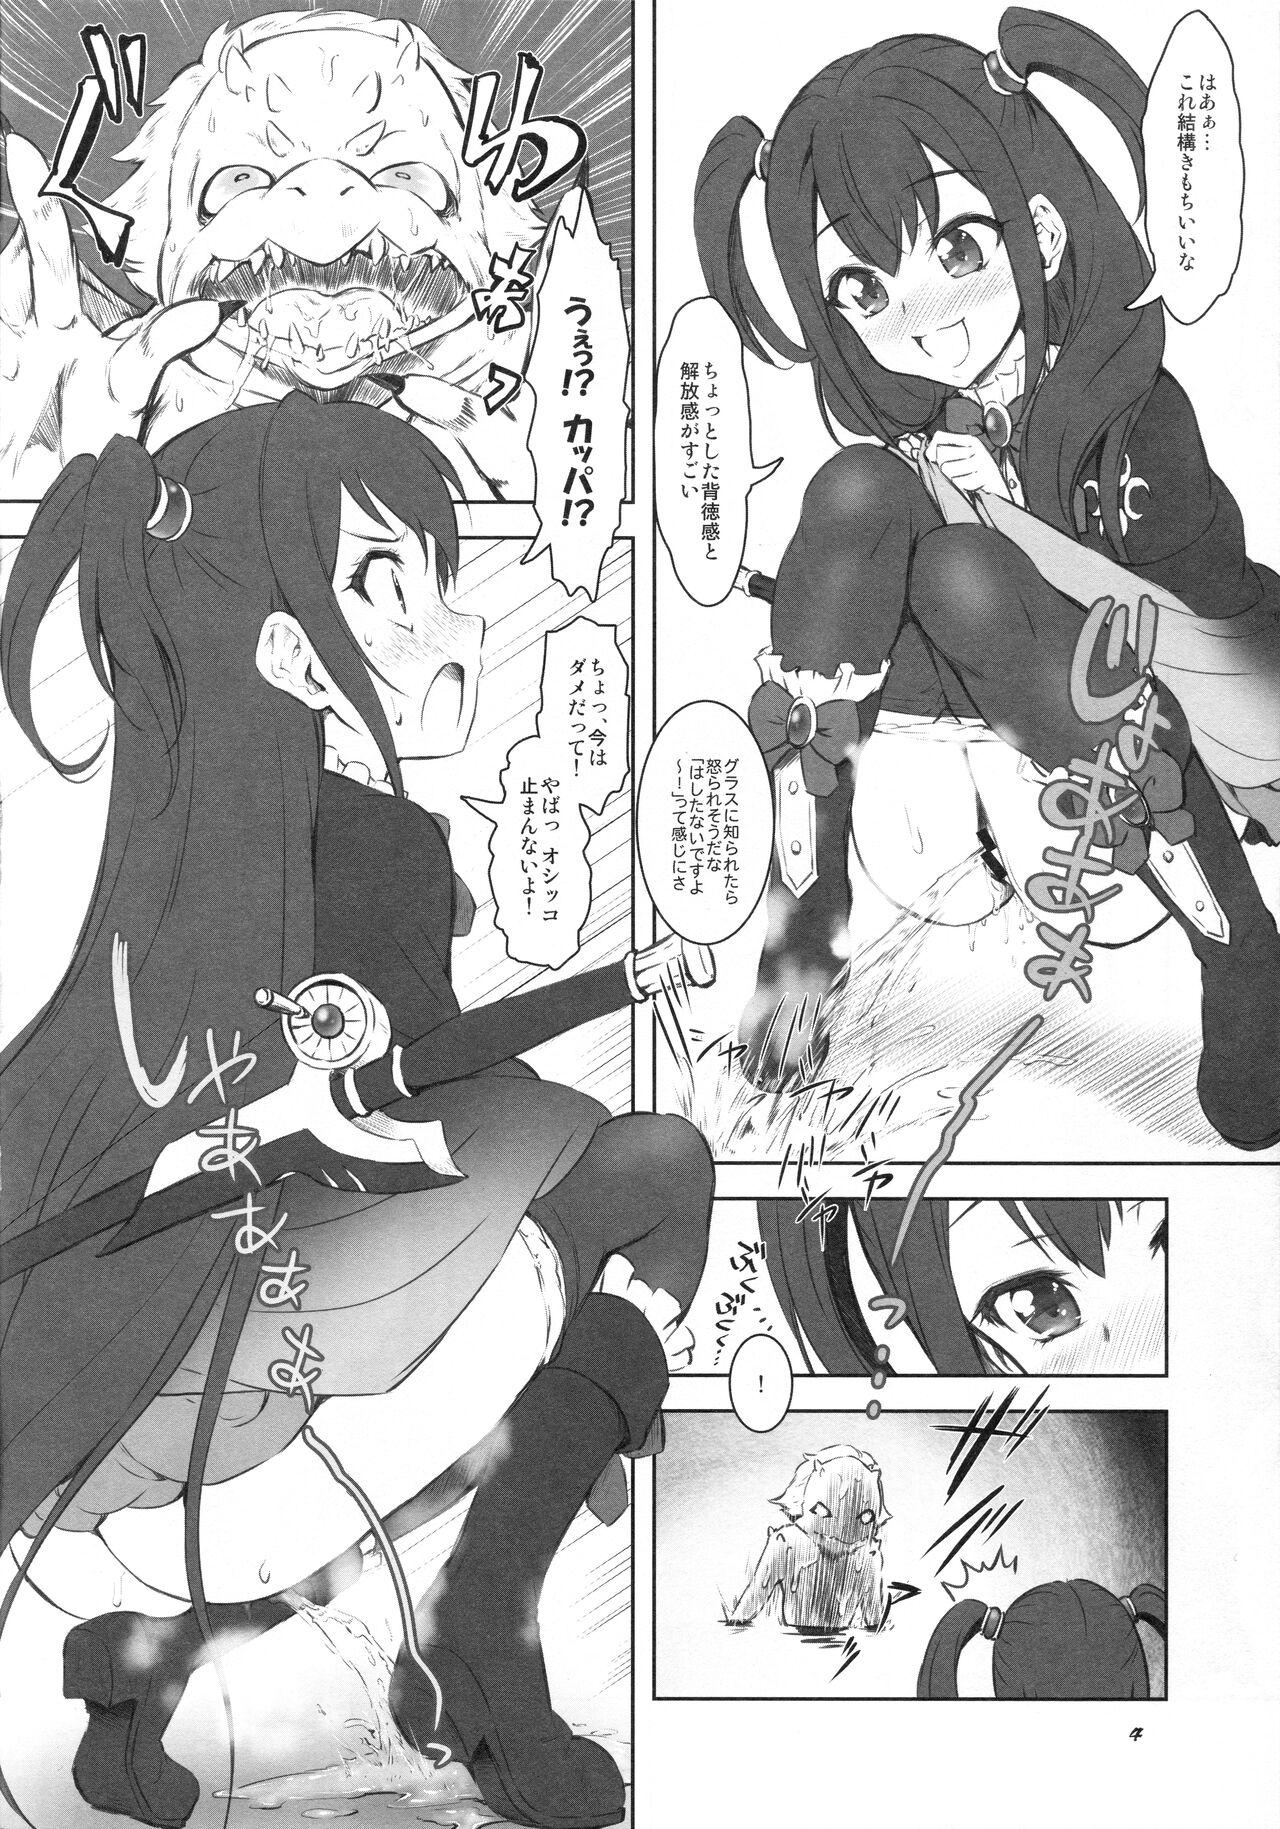 Amateur Pussy Kappa Biyori - Tate no yuusha no nariagari | the rising of the shield hero Real Amateur - Page 3